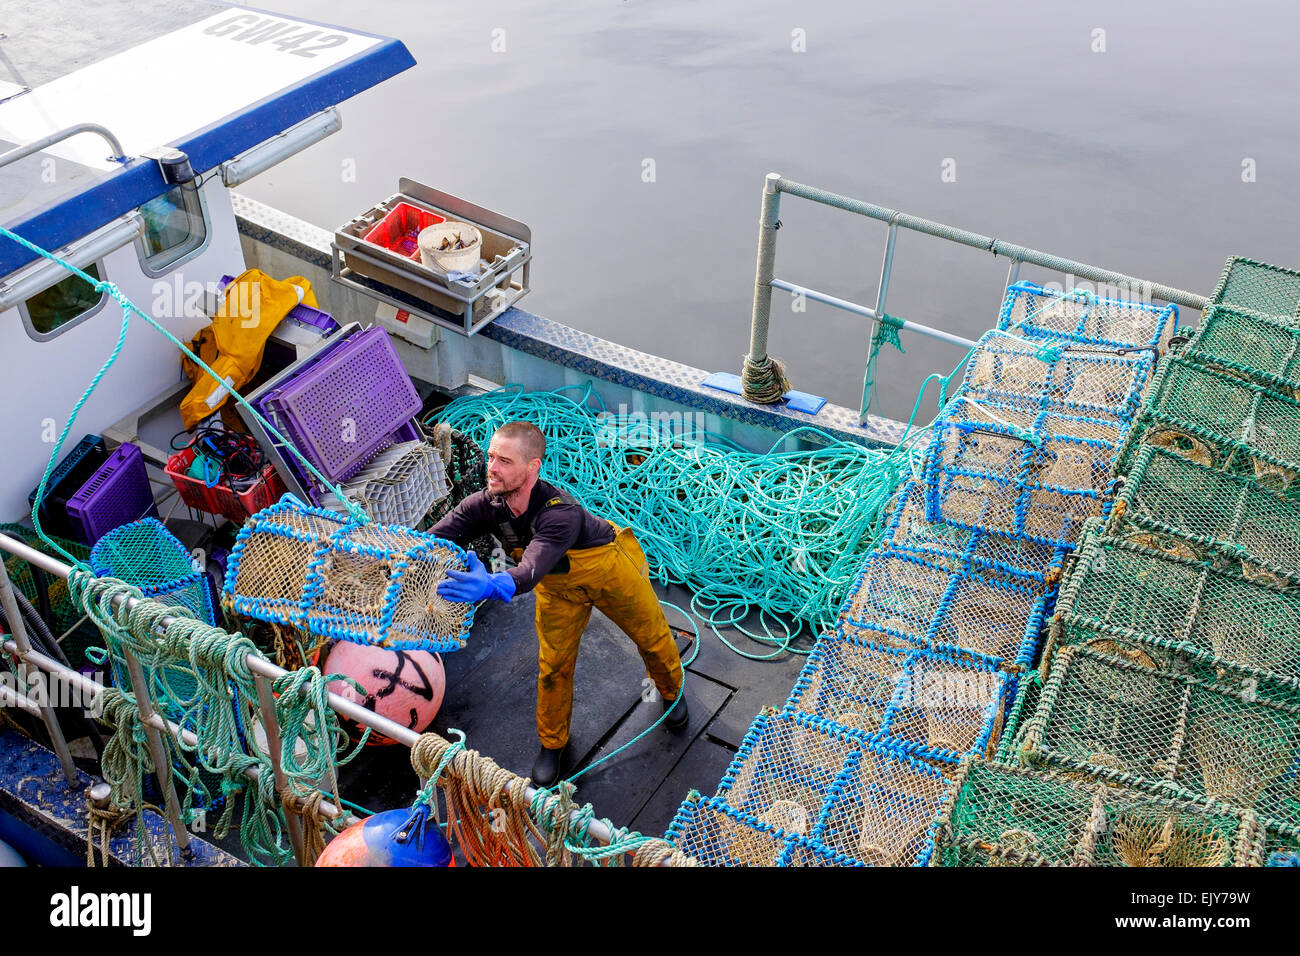 Neil McCulloch, pescatore di gamberi, caricando la sua barca da pesca con reti prima di uscire per andare a pesca nel Firth of Clyde, Greenock Foto Stock